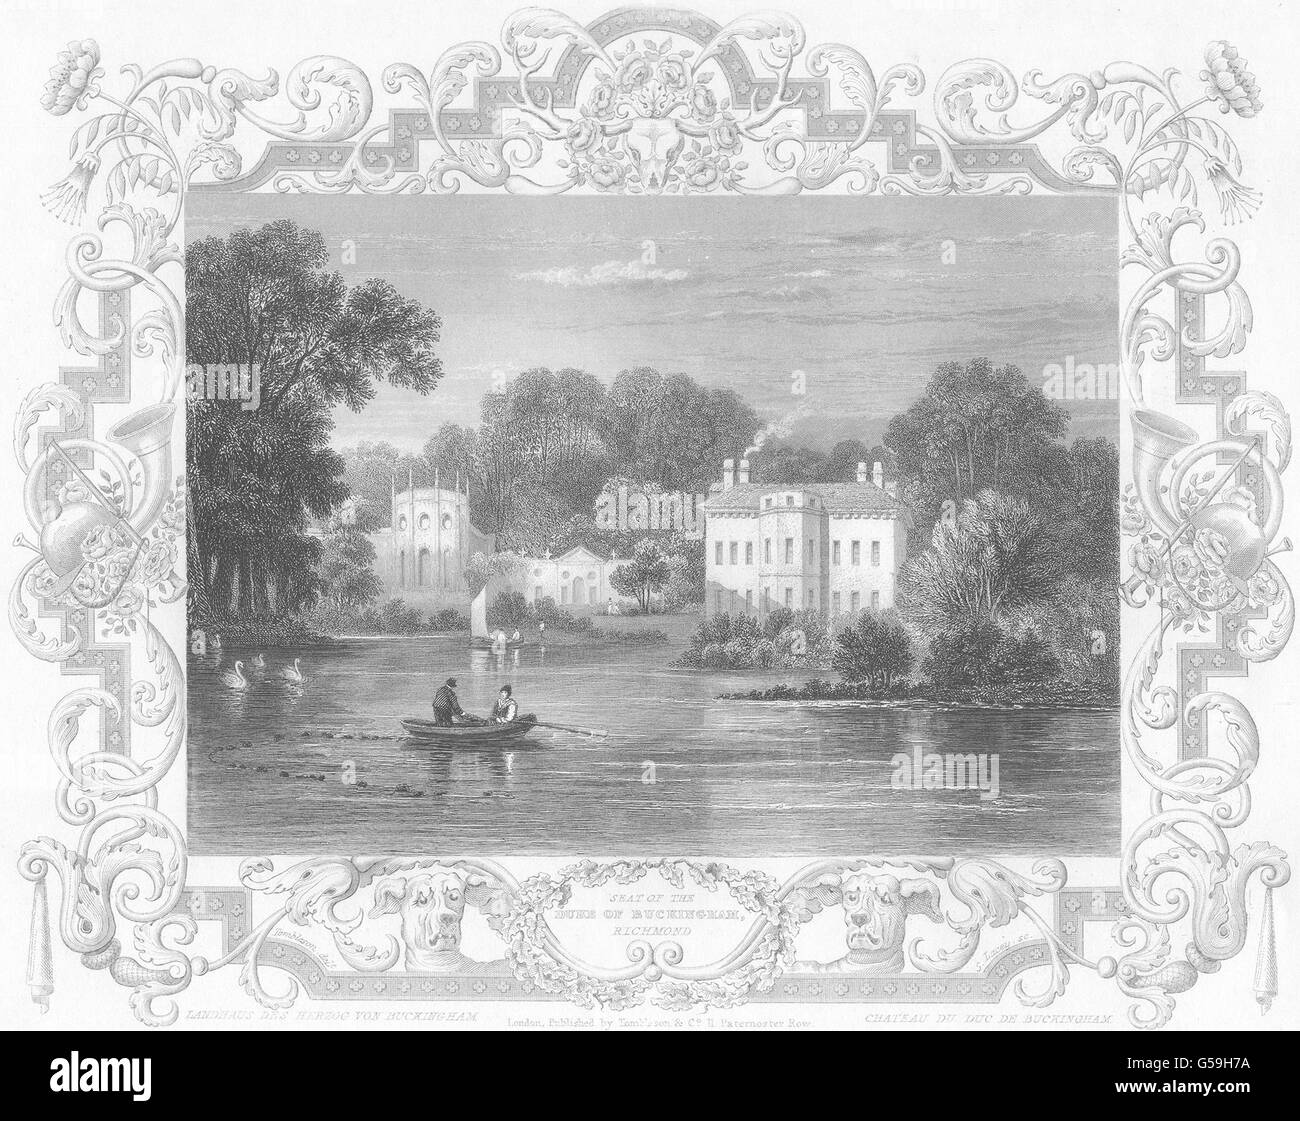 SURREY: Sitz des Duke Of Buckingham, Richmond (Tombleson), alten Drucken 1830 Stockfoto